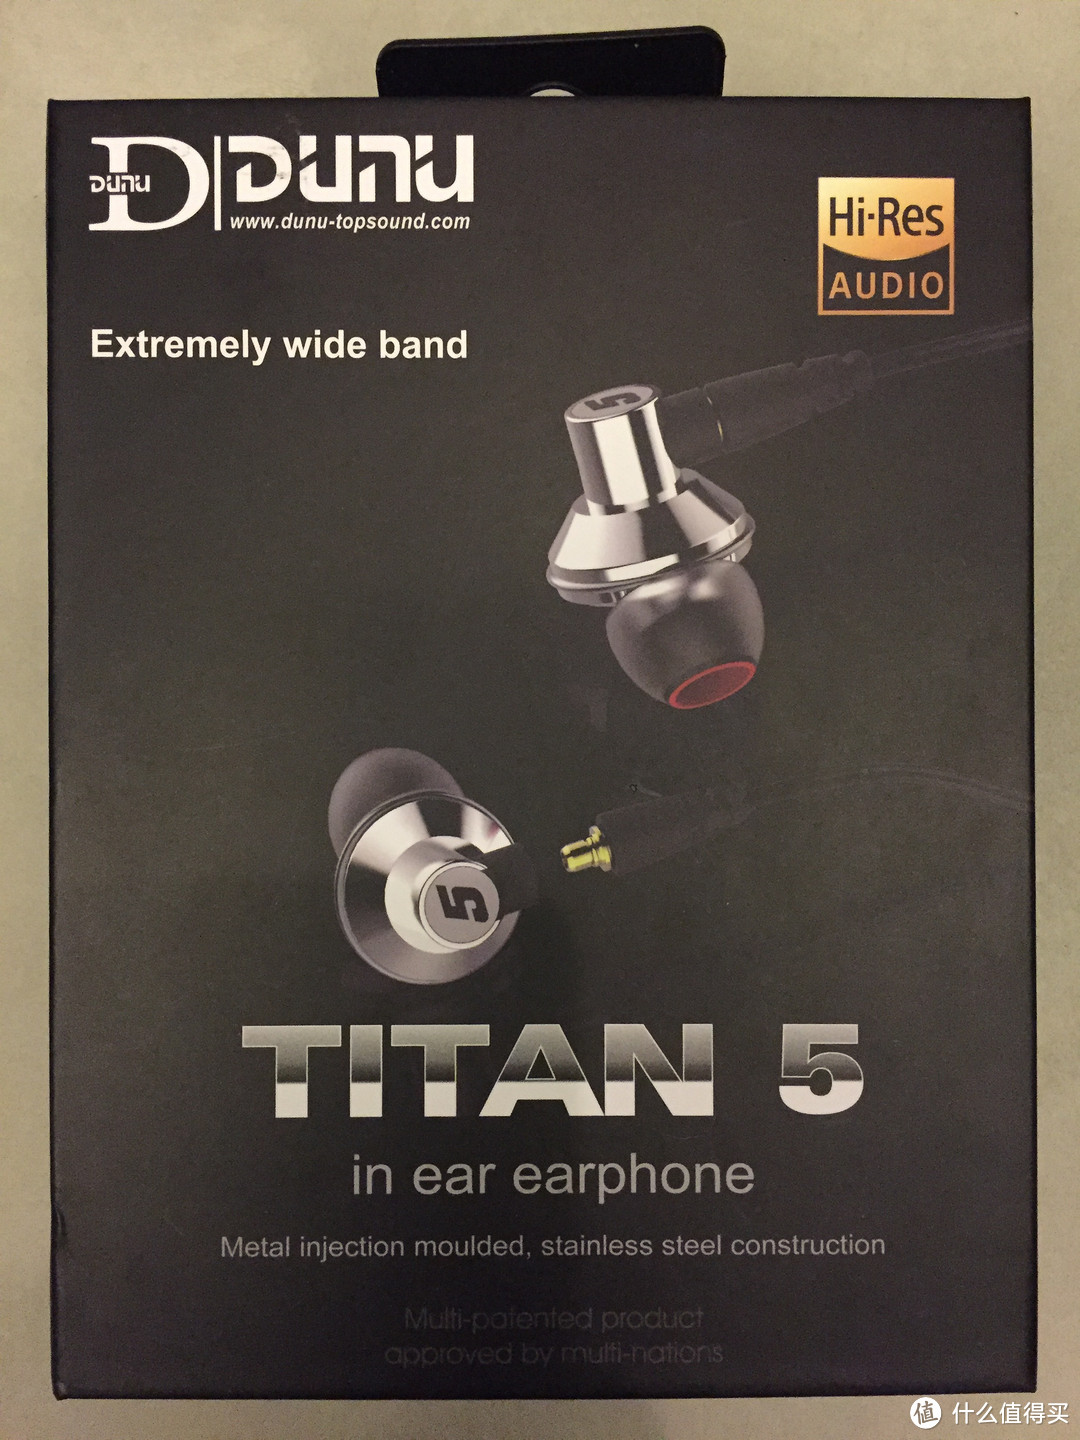 钛晶振膜的魅力-------------------DUNU 达音科 Titan5 耳机